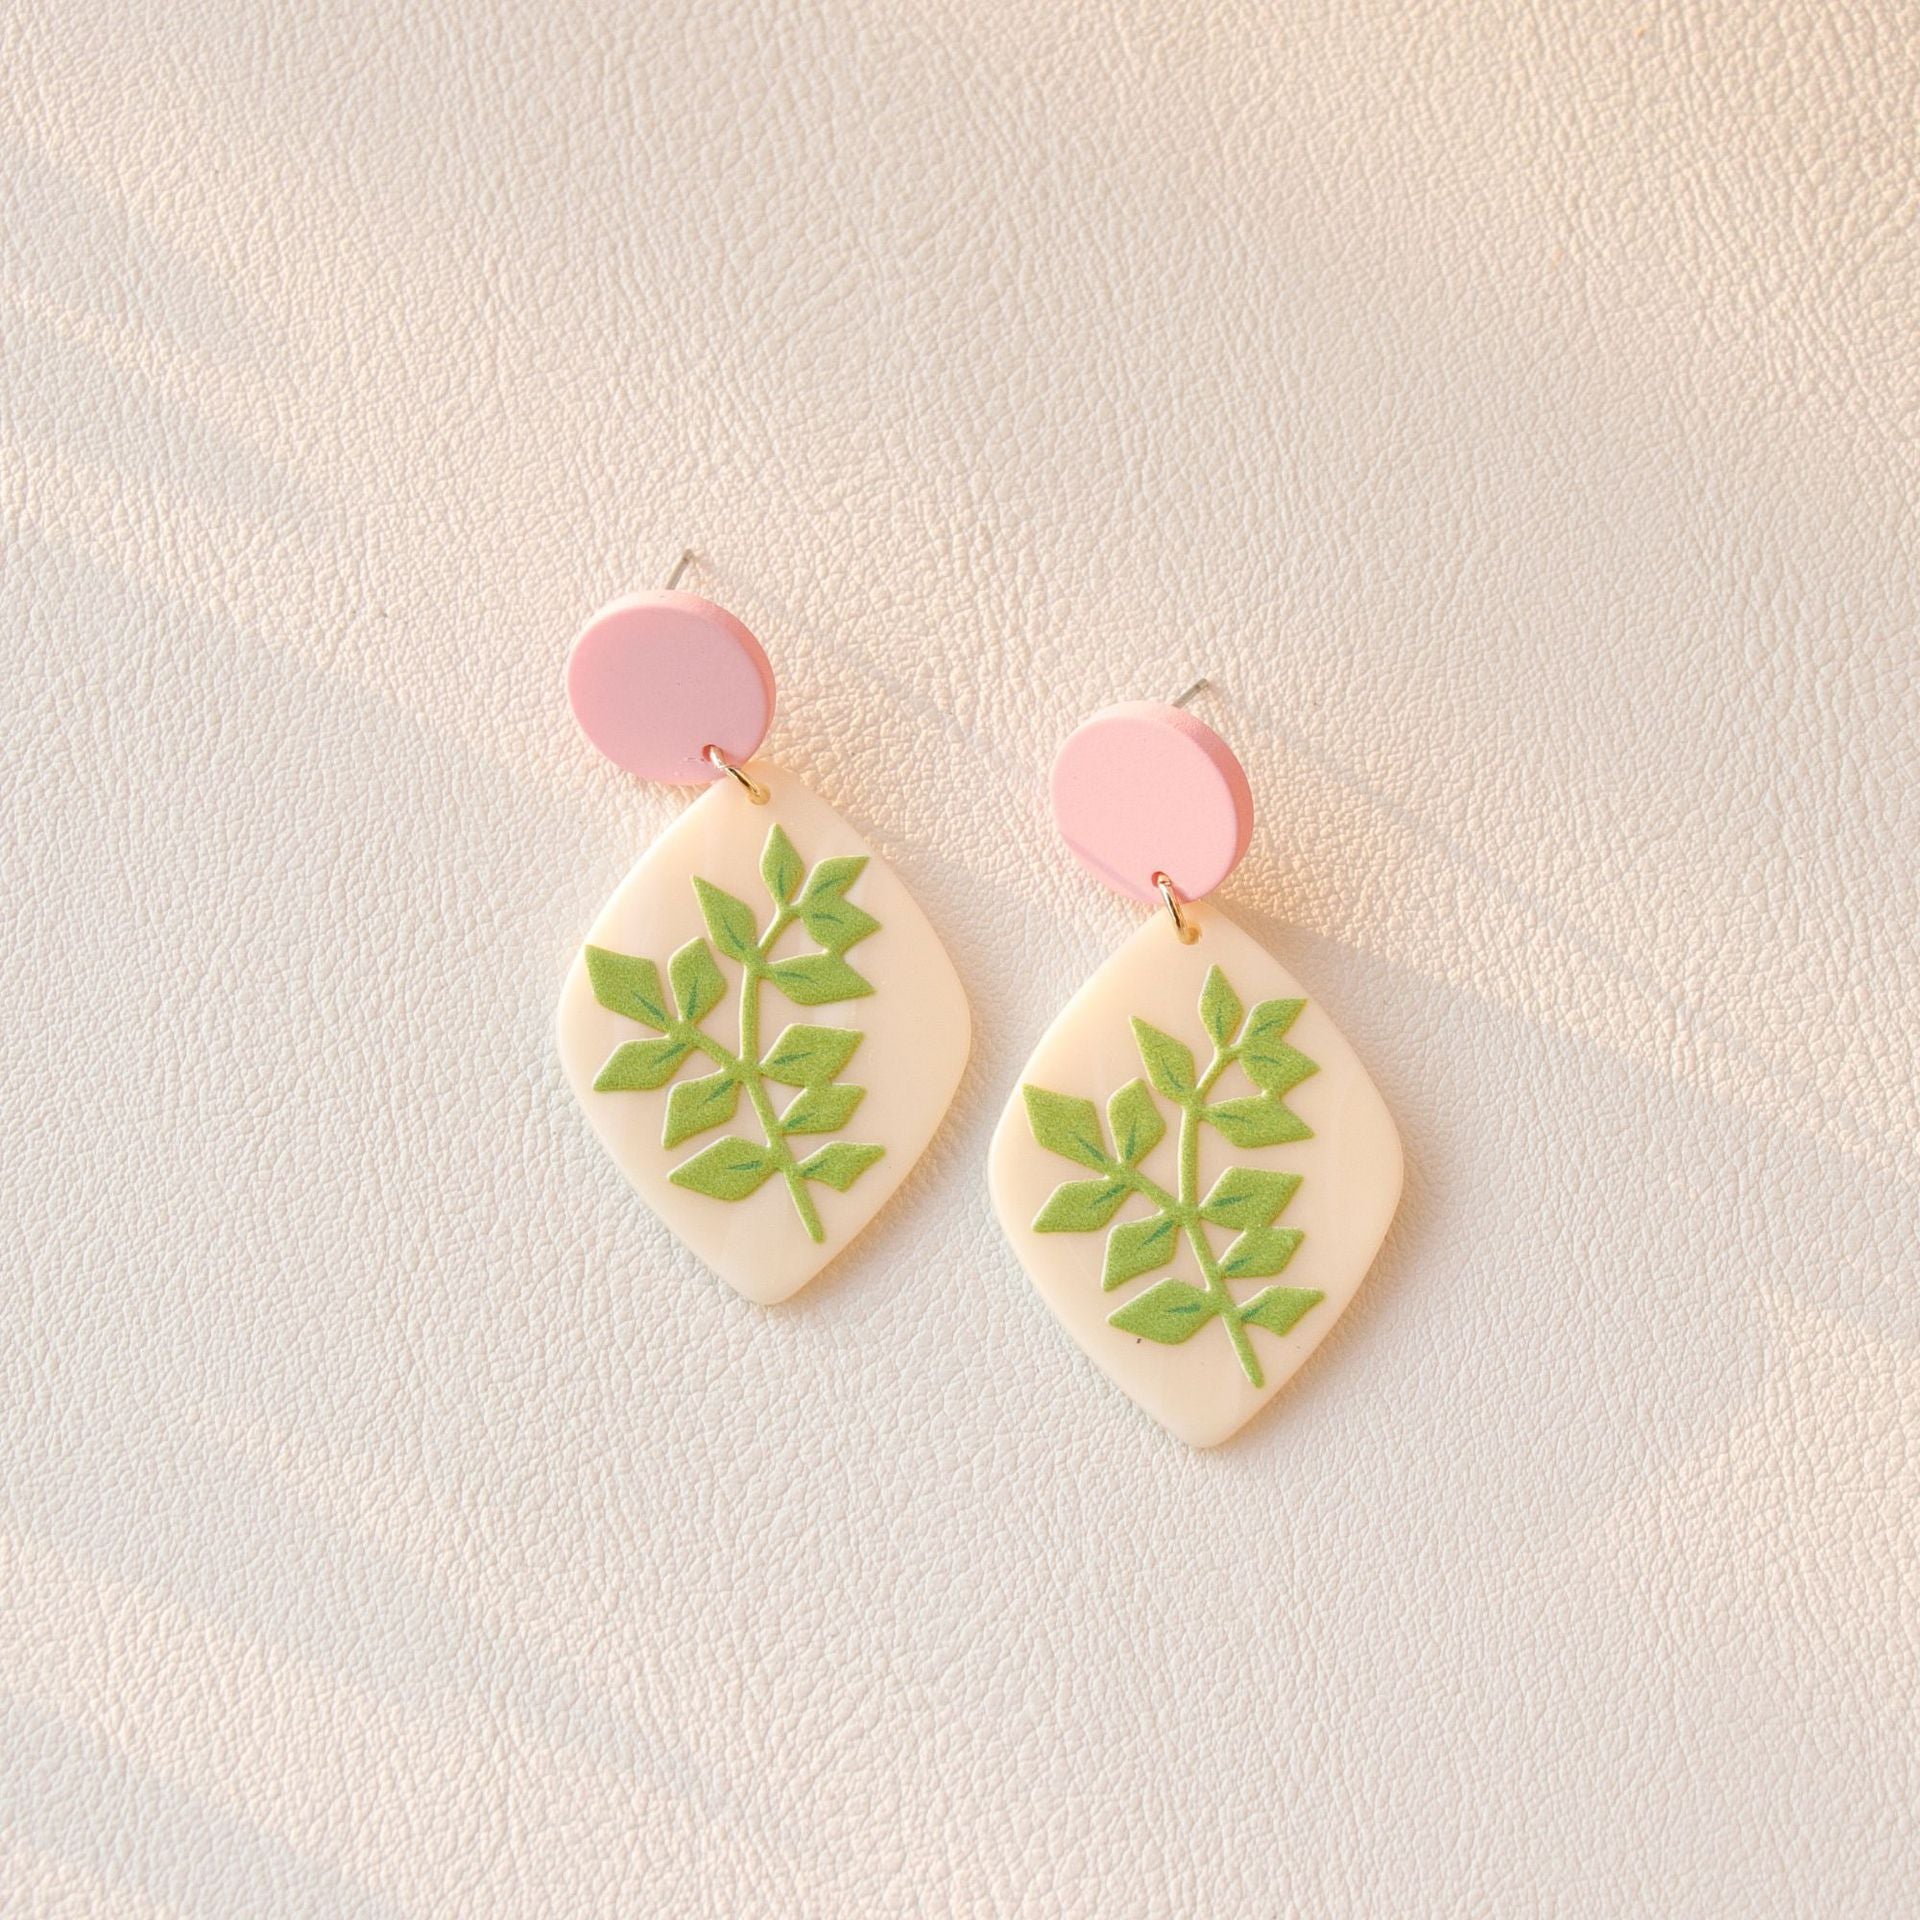 just-lil-things-pink-pin-earrings-jlt10622